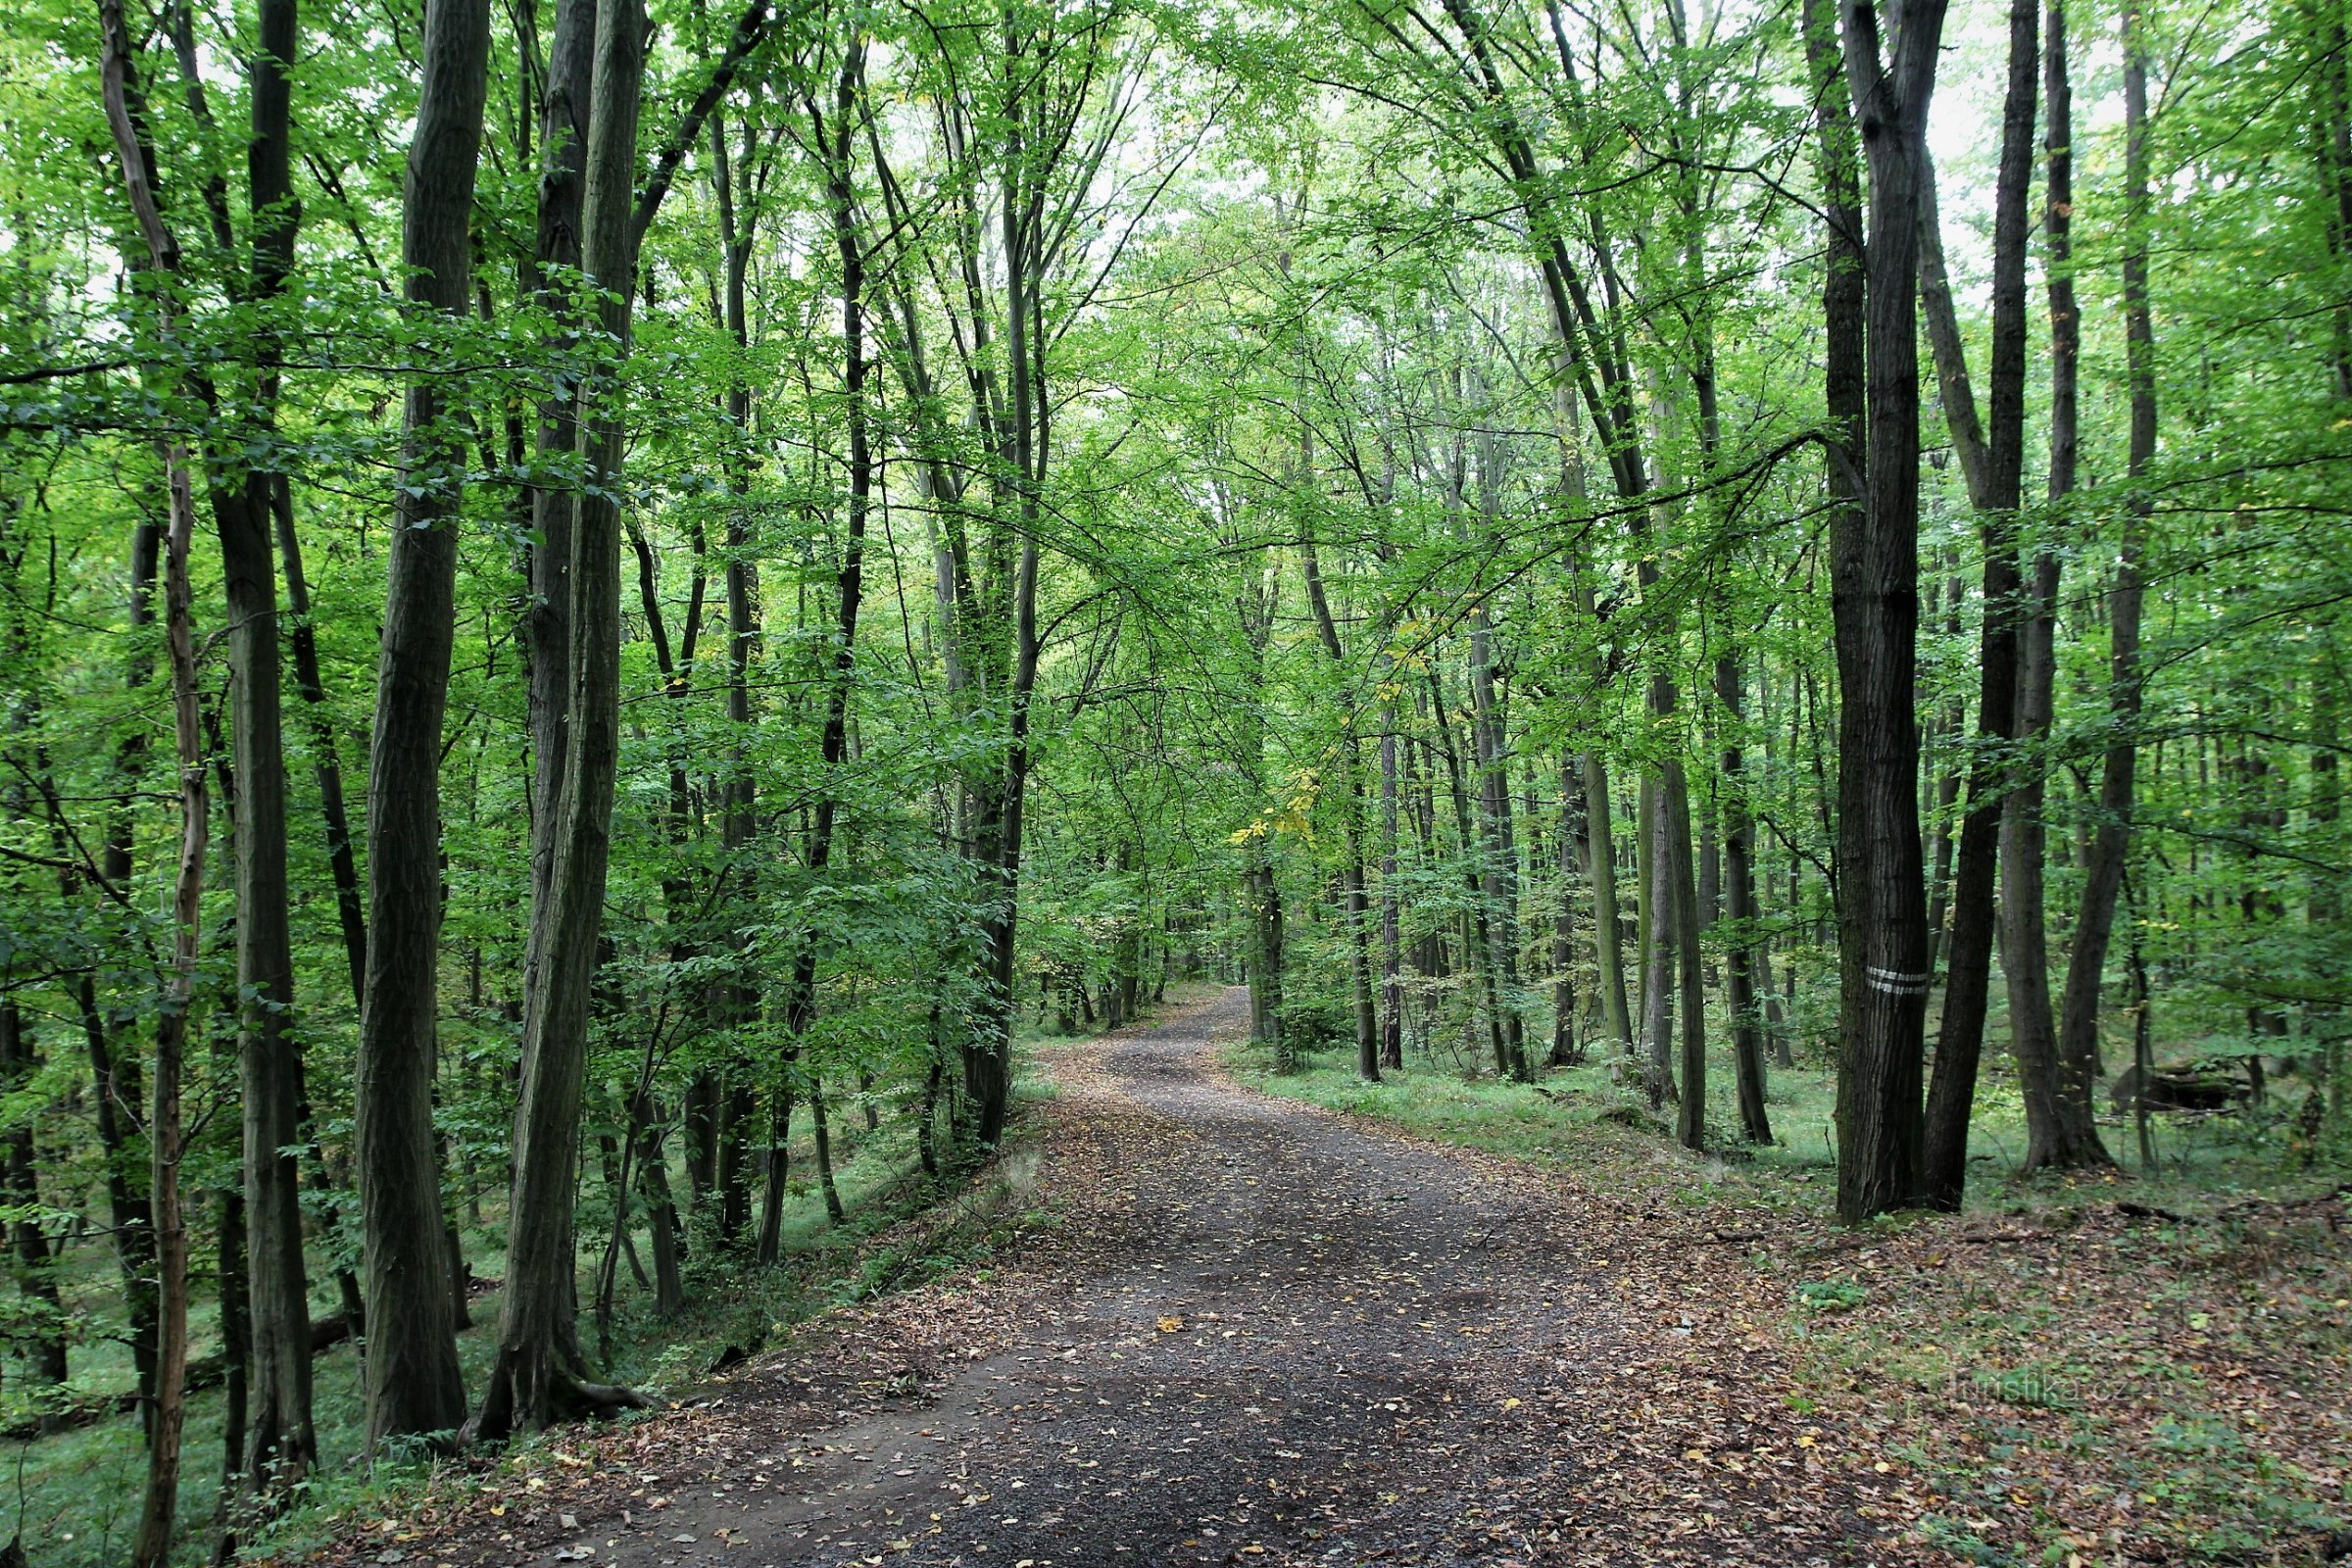 În vecinătatea parcului forestier Holedná, există în mare parte păduri de foioase de stejar-carpen